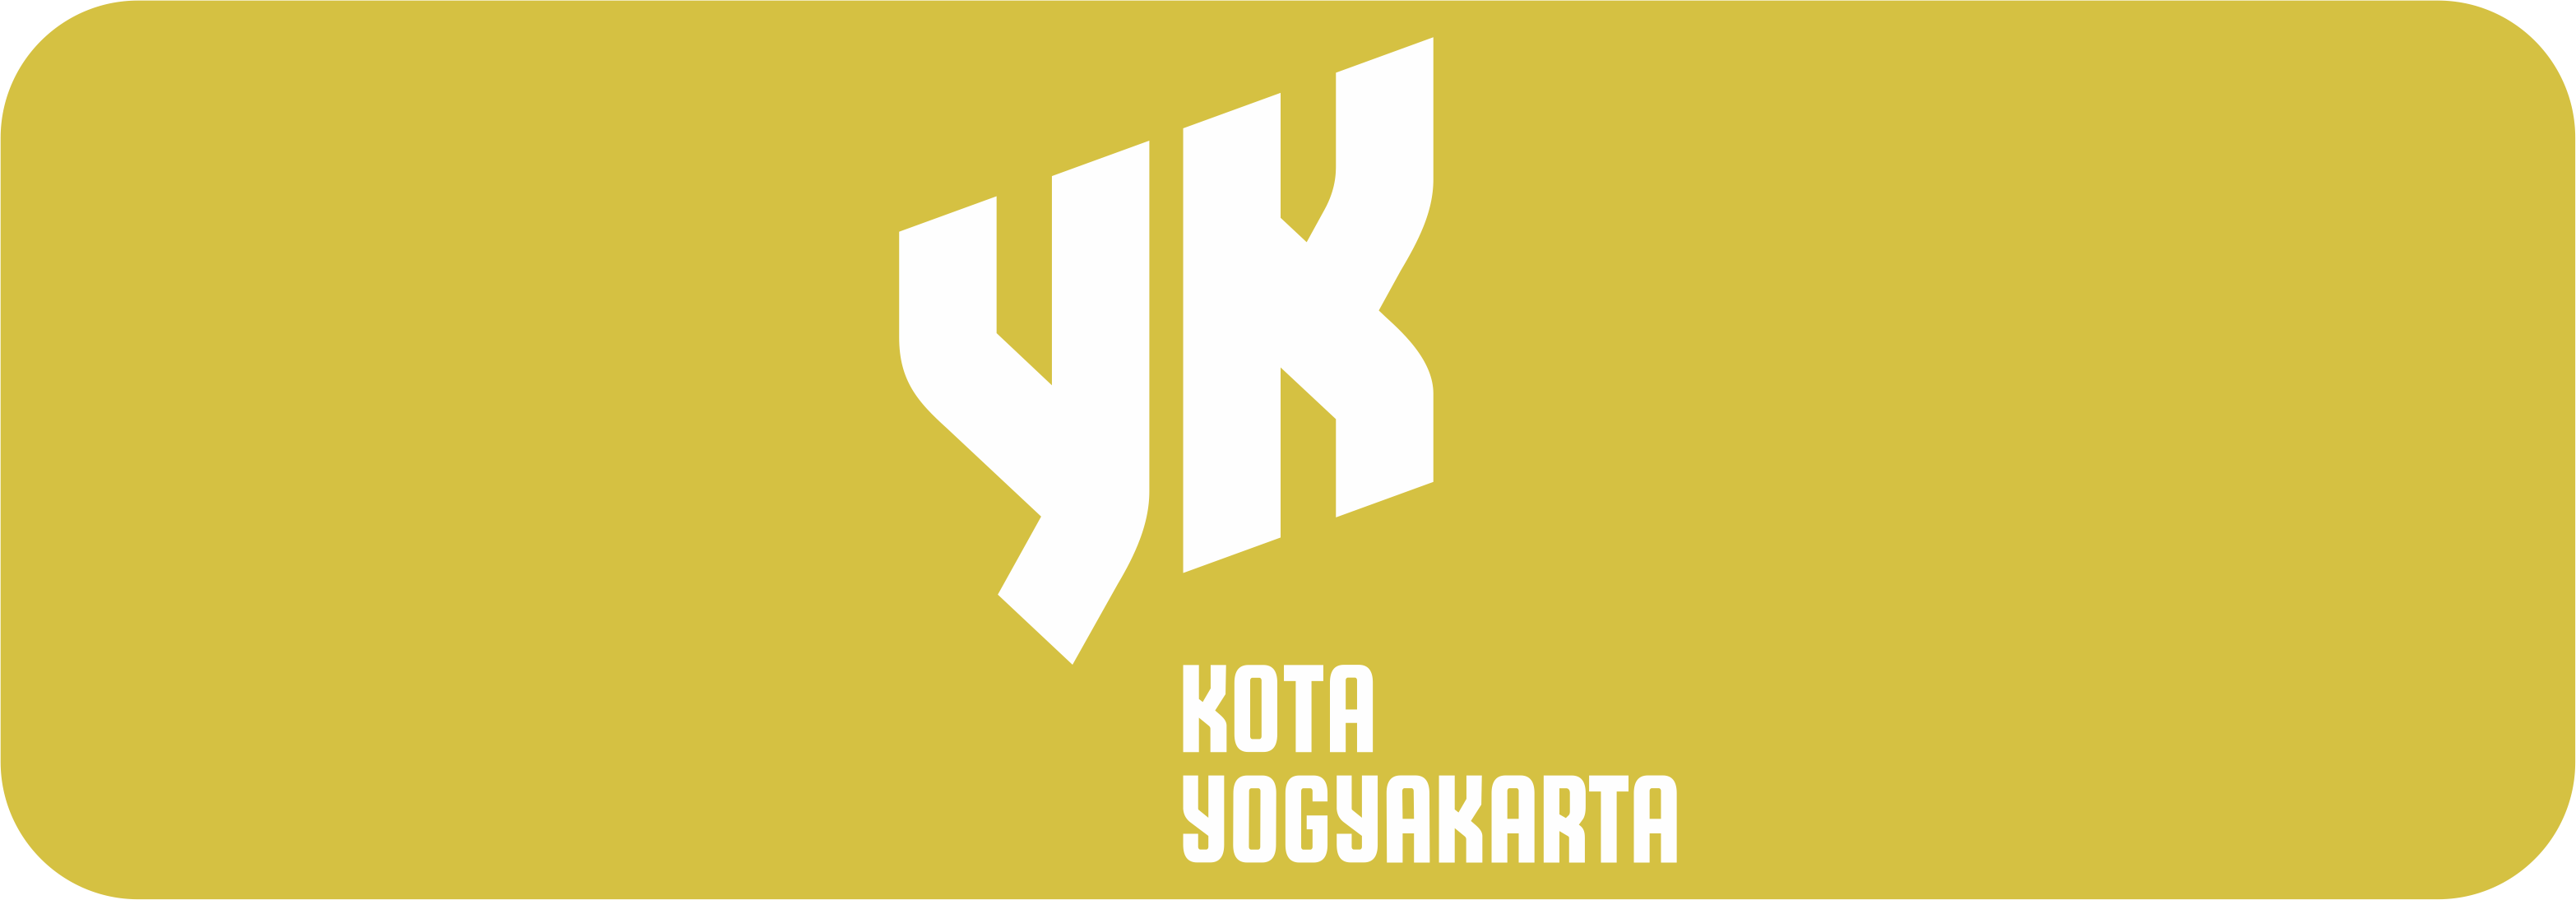 Portal Pemerintah Kota Yogyakarta